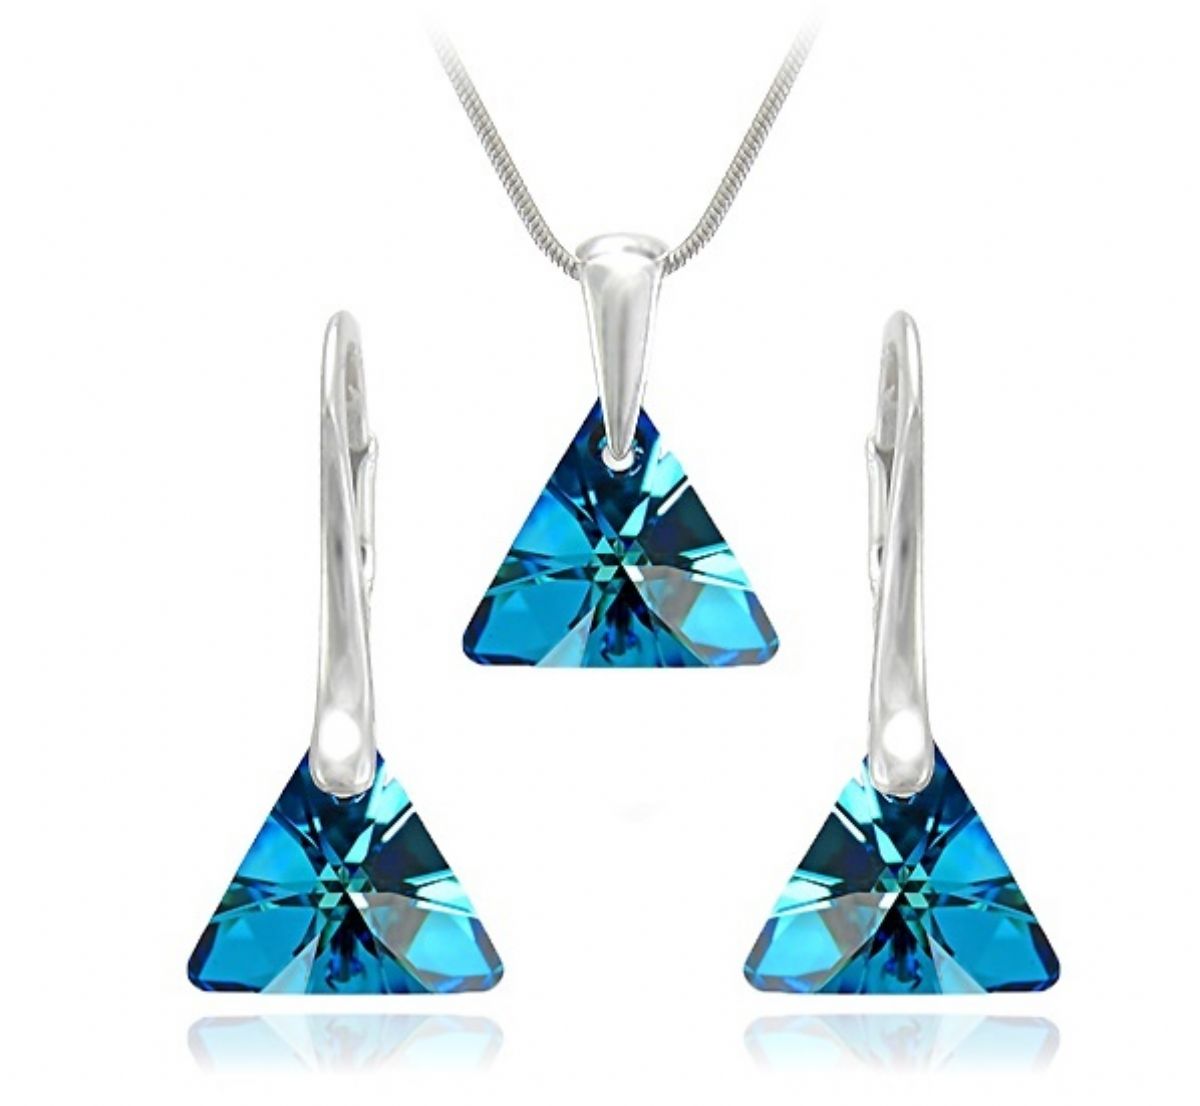 Stříbrný set Swarovski - Xilion Triangle Bermuda Blue 1/5